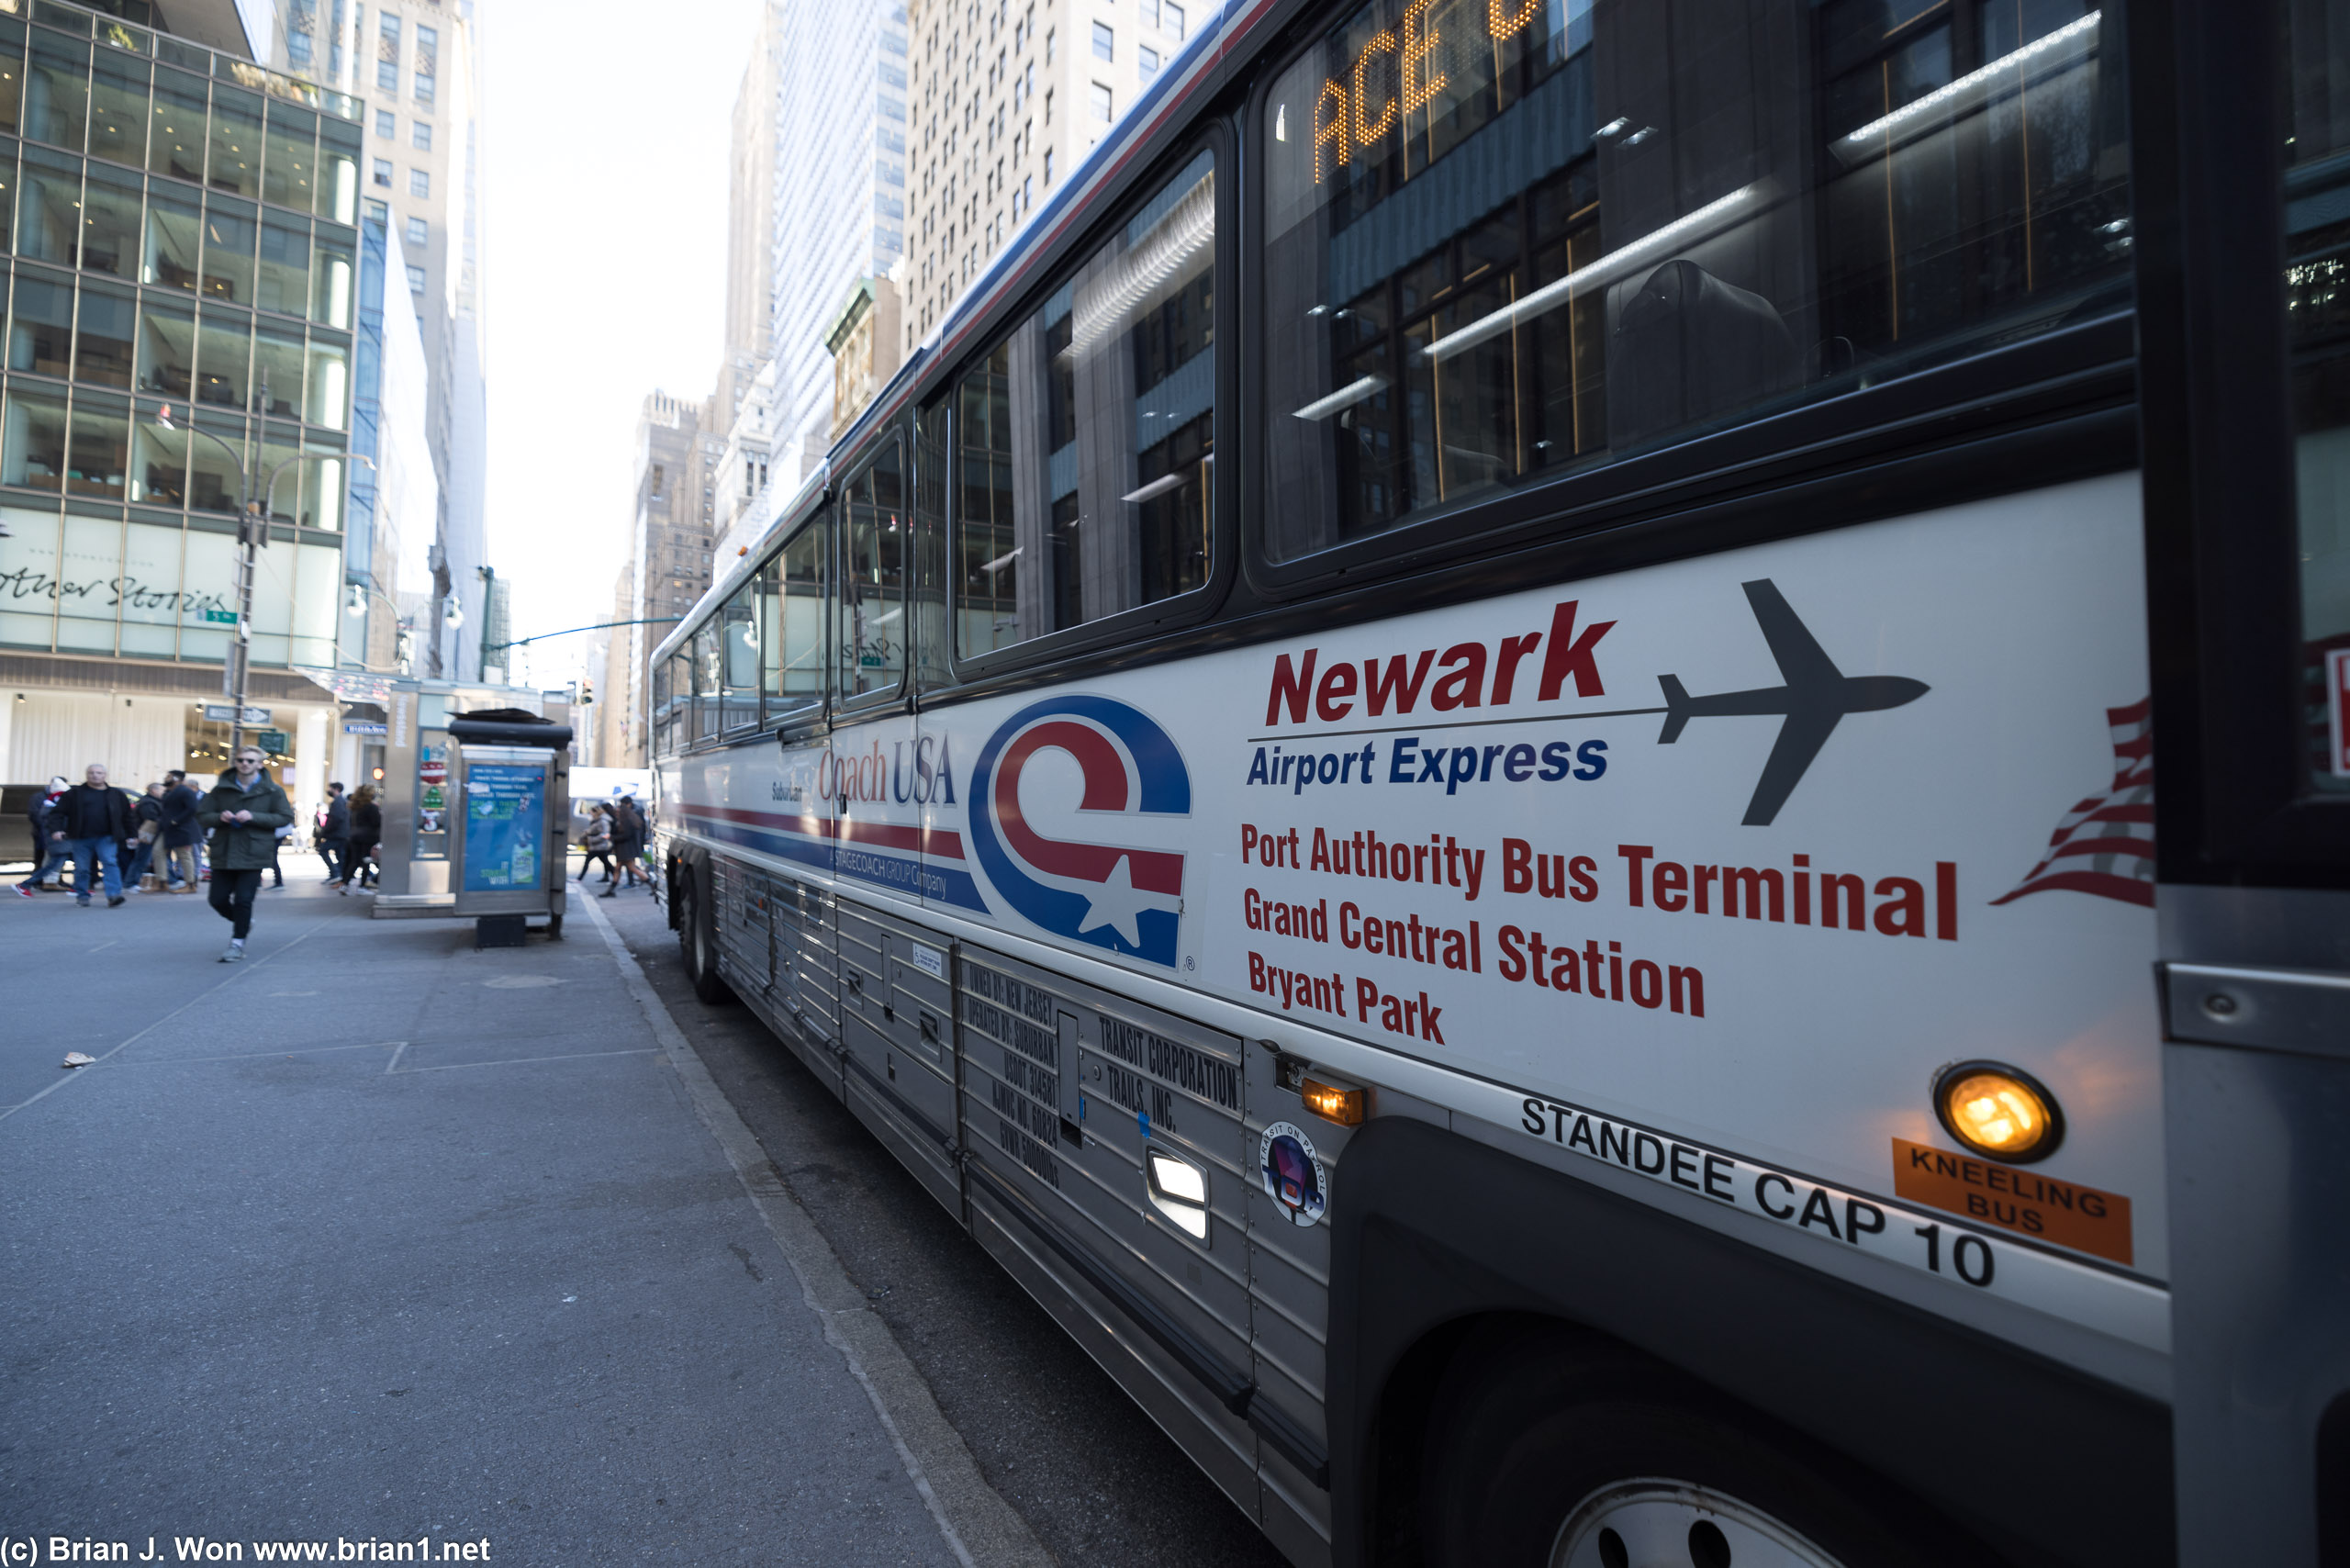 Newark Airport Express bus.